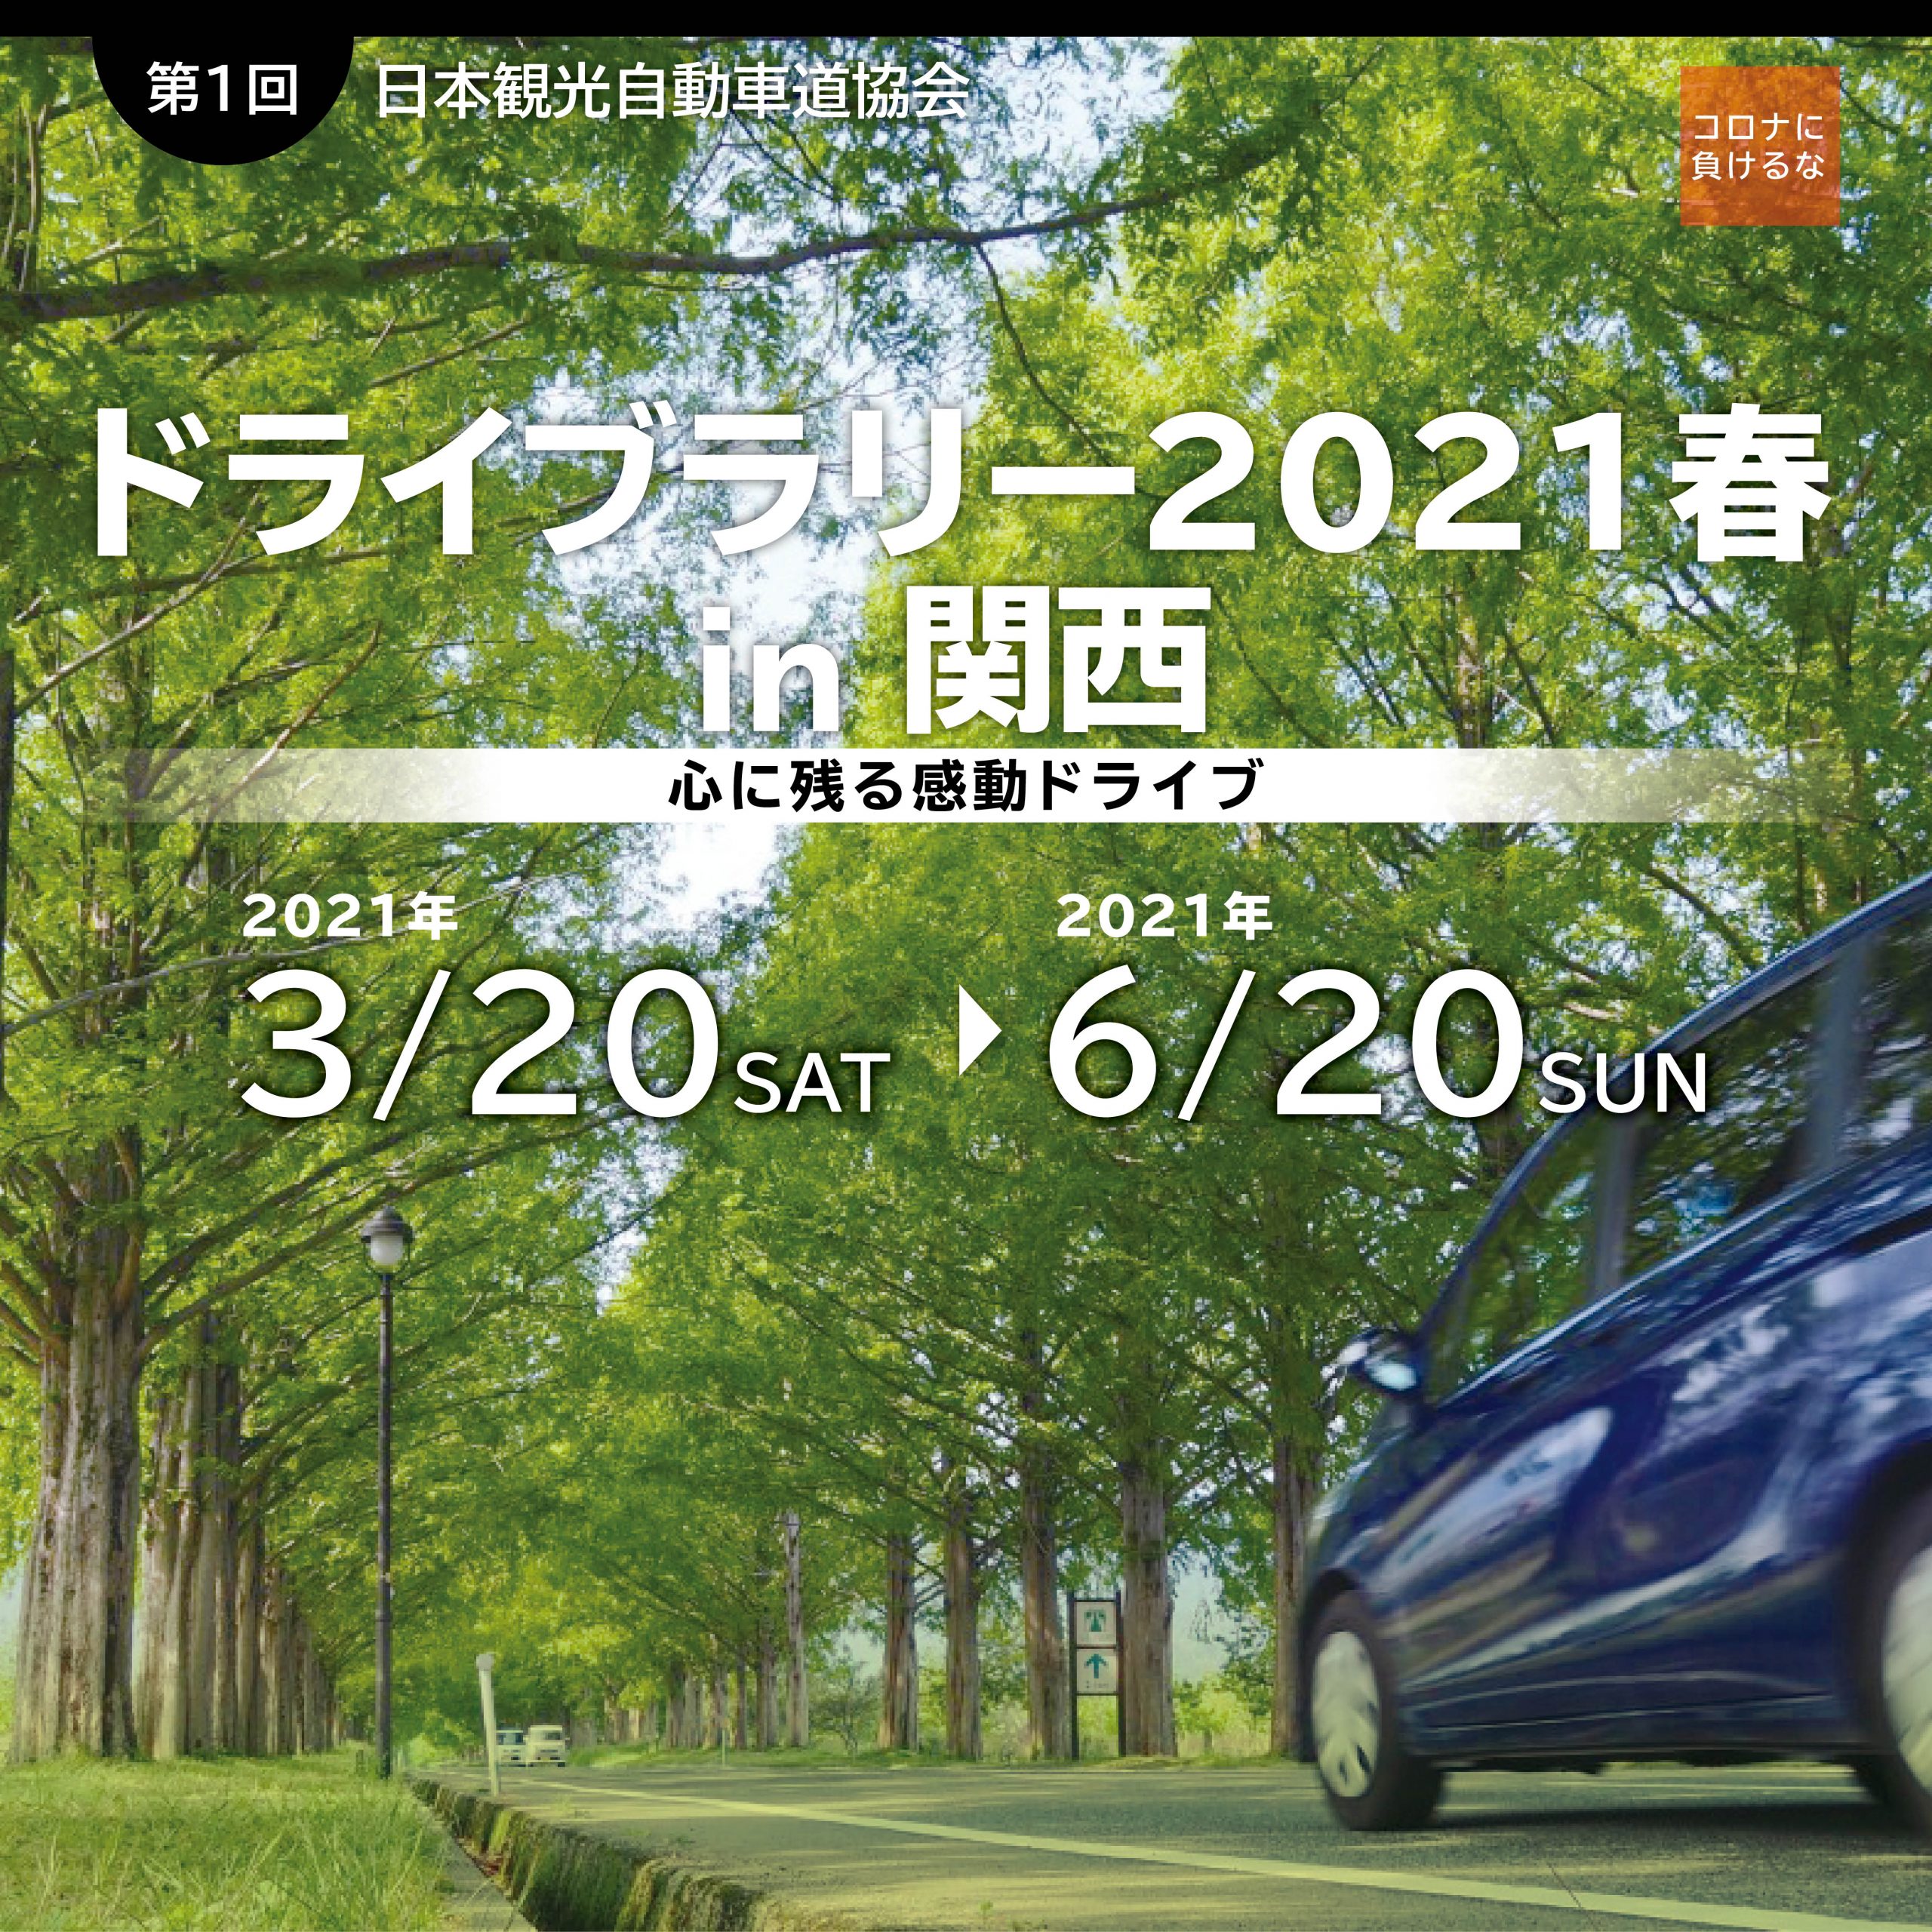 ドライブラリー2021春 in 関西